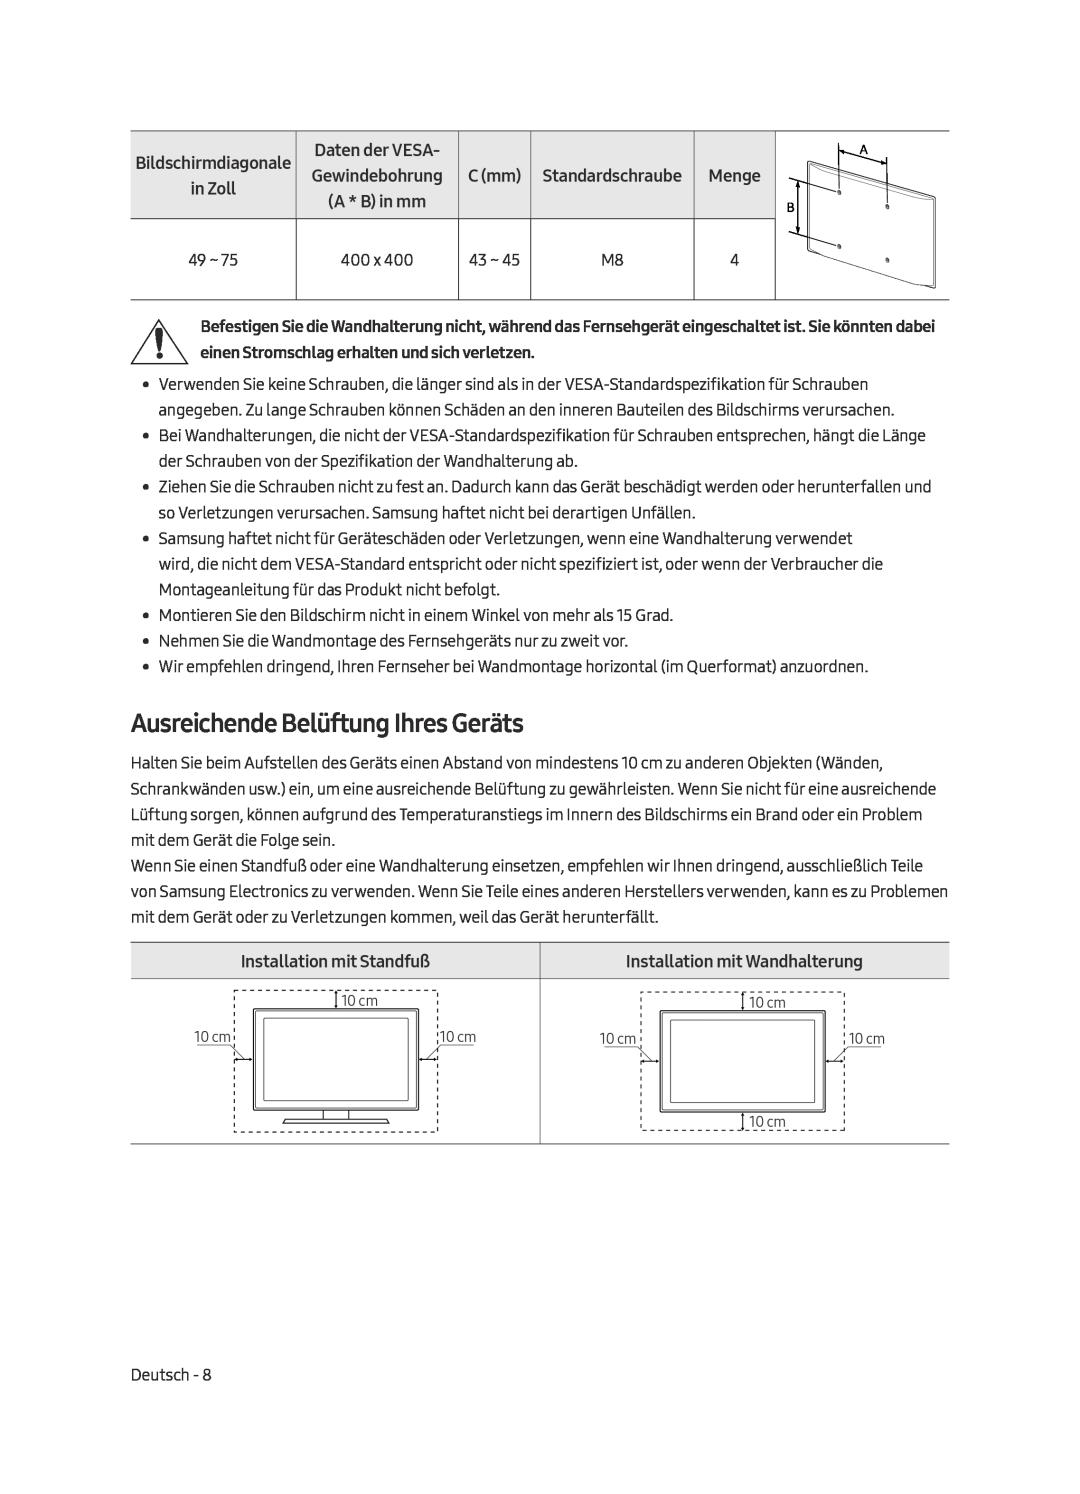 Samsung UE55MU7070LXXN manual Ausreichende Belüftung Ihres Geräts, Bildschirmdiagonale in Zoll, Installation mit Standfuß 